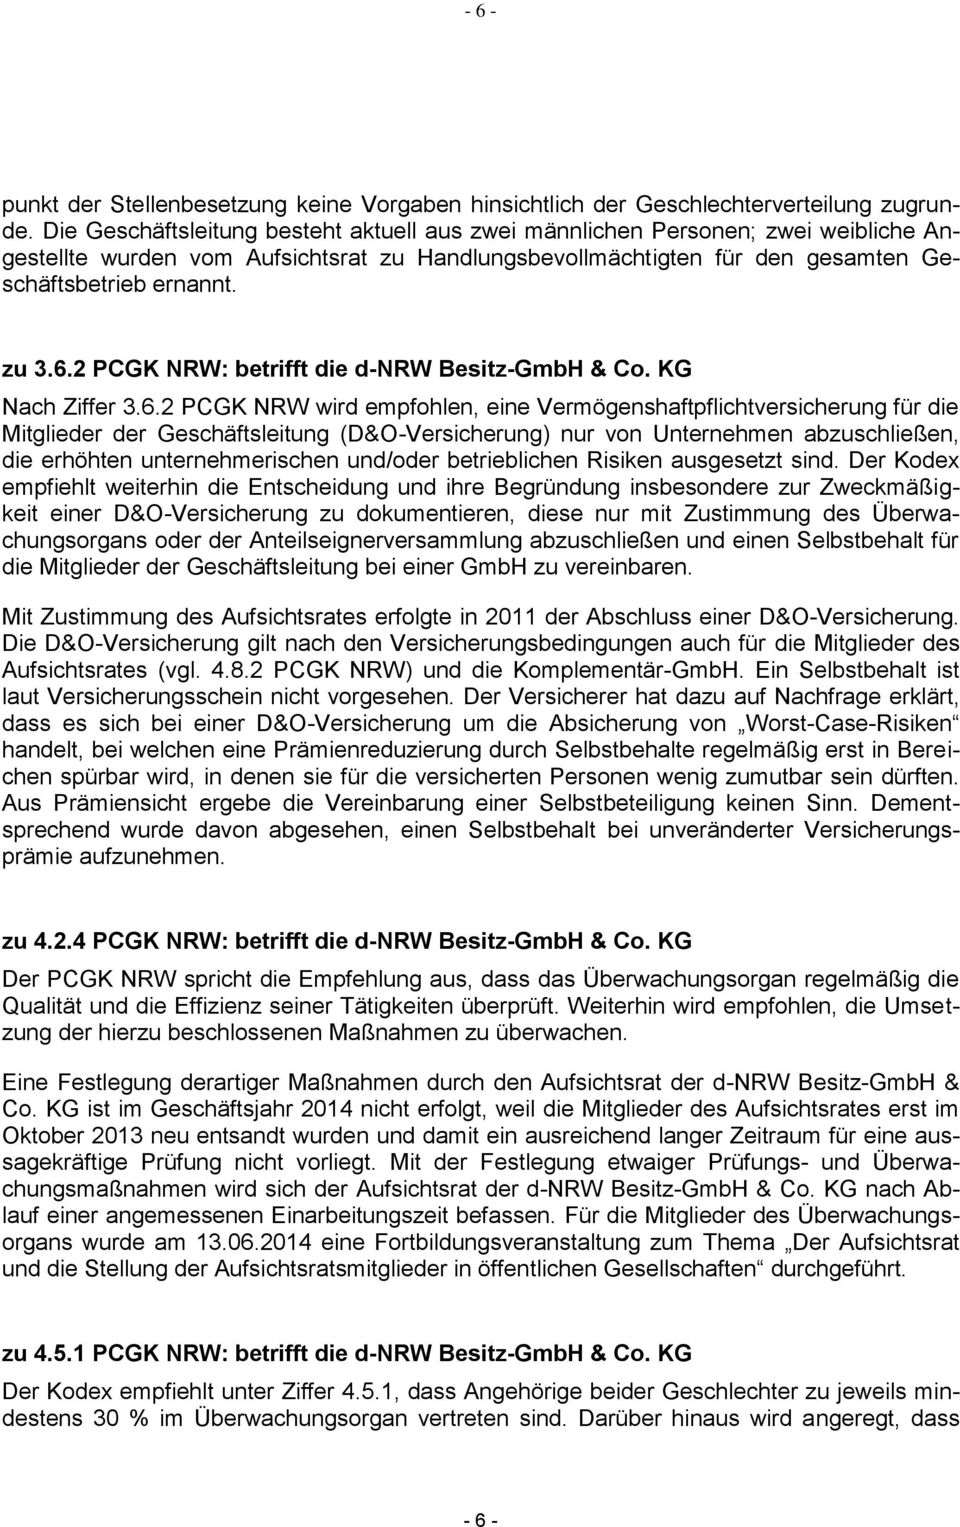 2 PCGK NRW: betrifft die d-nrw Besitz-GmbH & Co. KG Nach Ziffer 3.6.